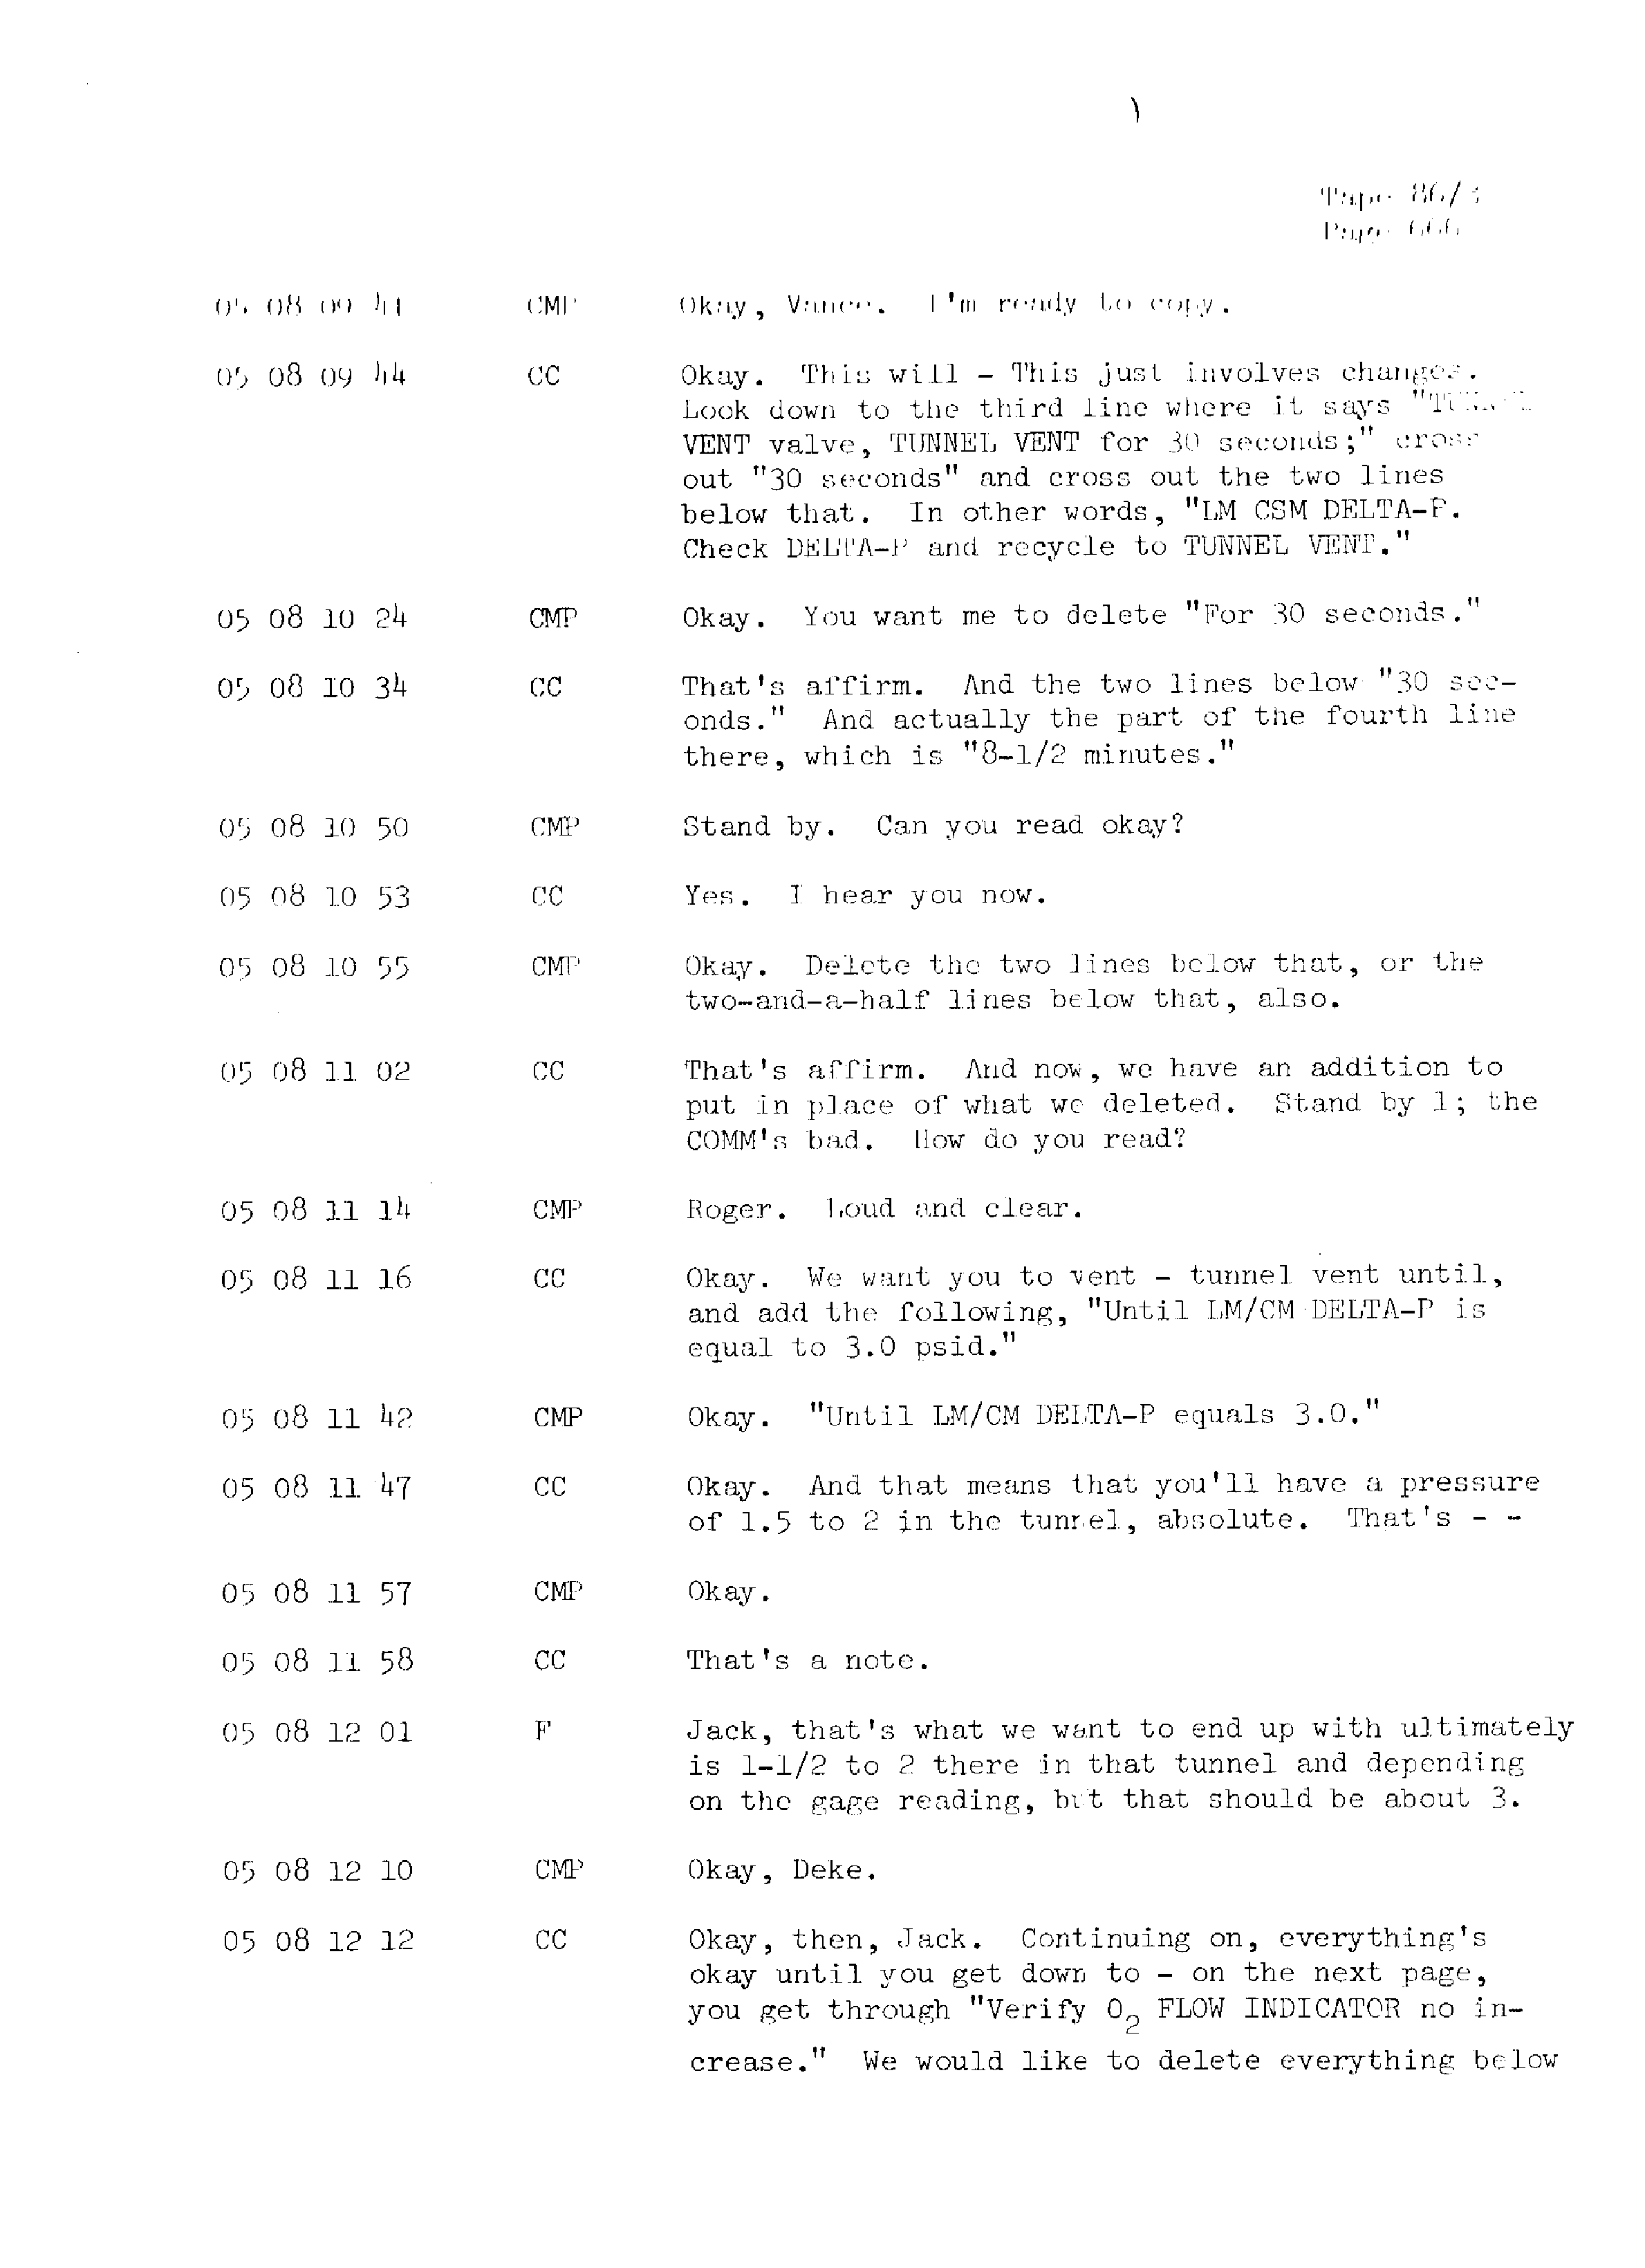 Page 673 of Apollo 13’s original transcript